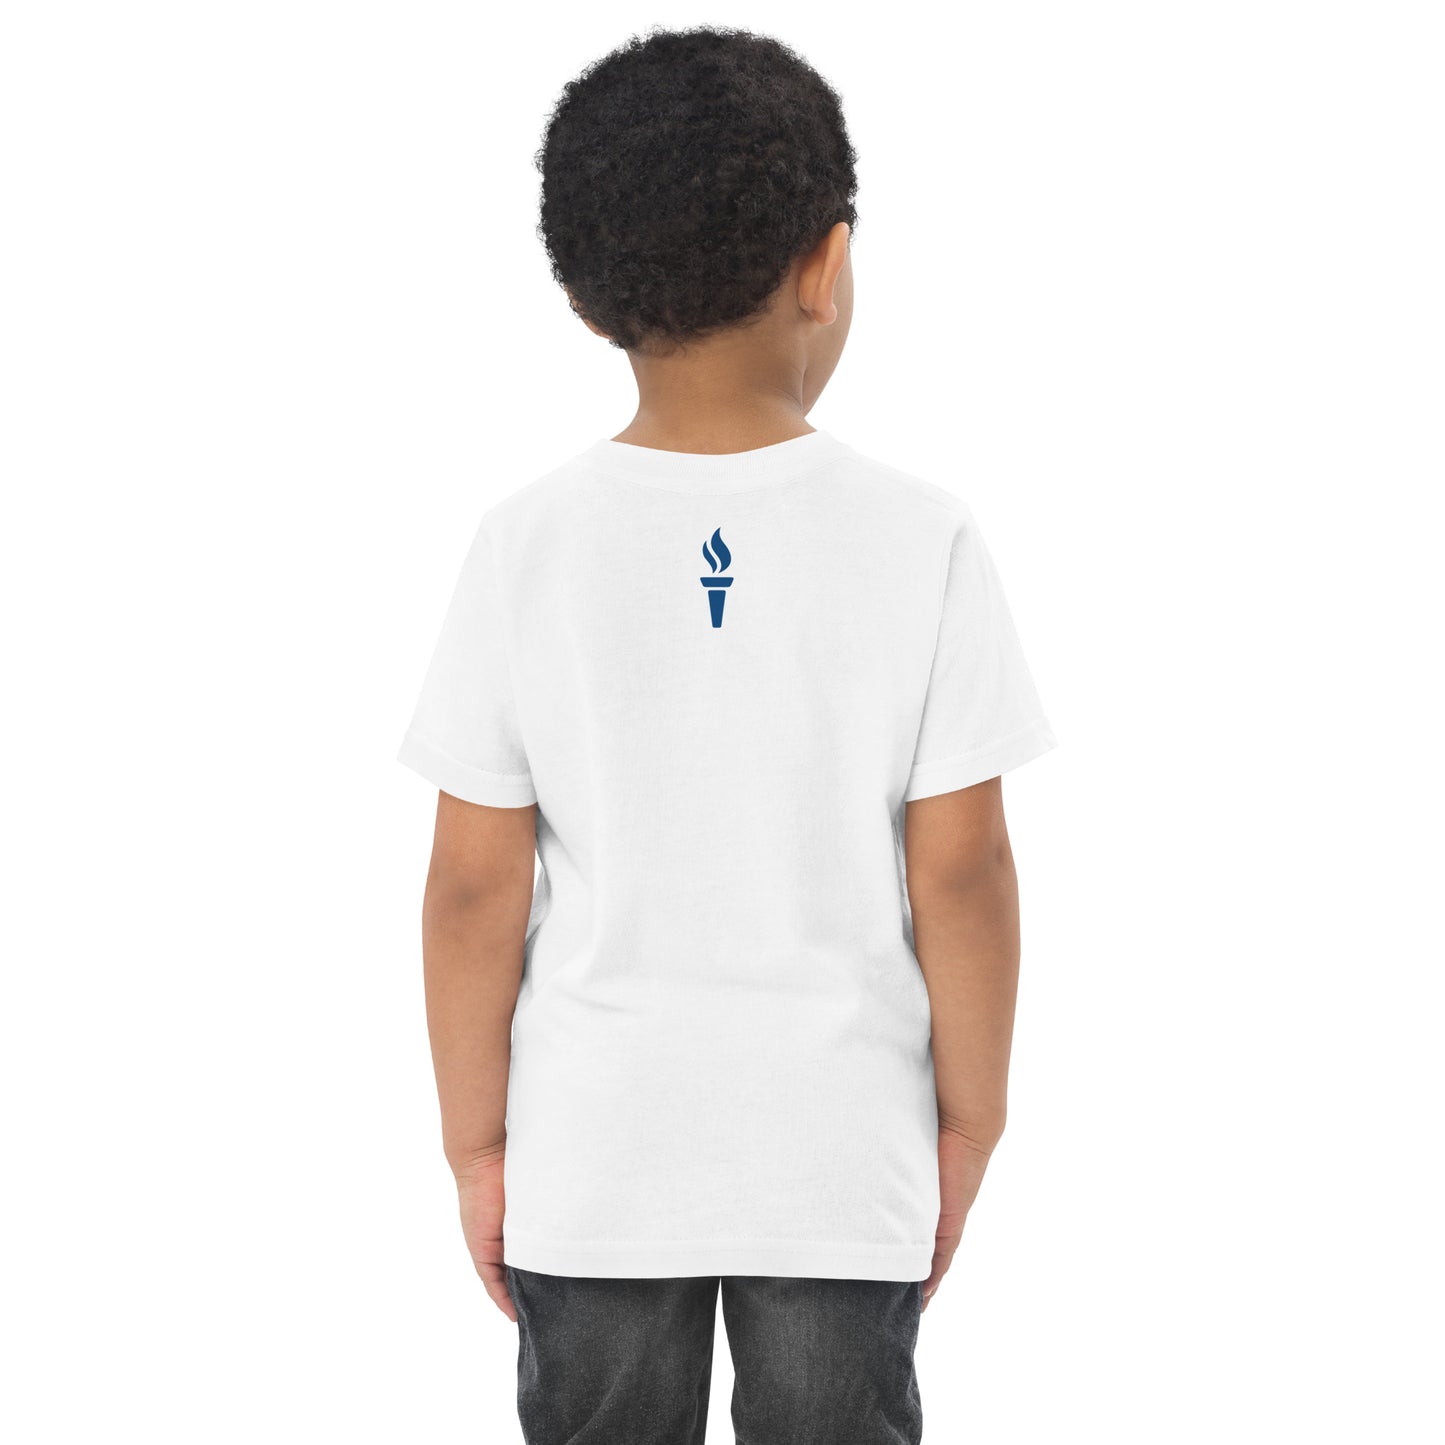 John Locke Toddler Jersey T-shirt